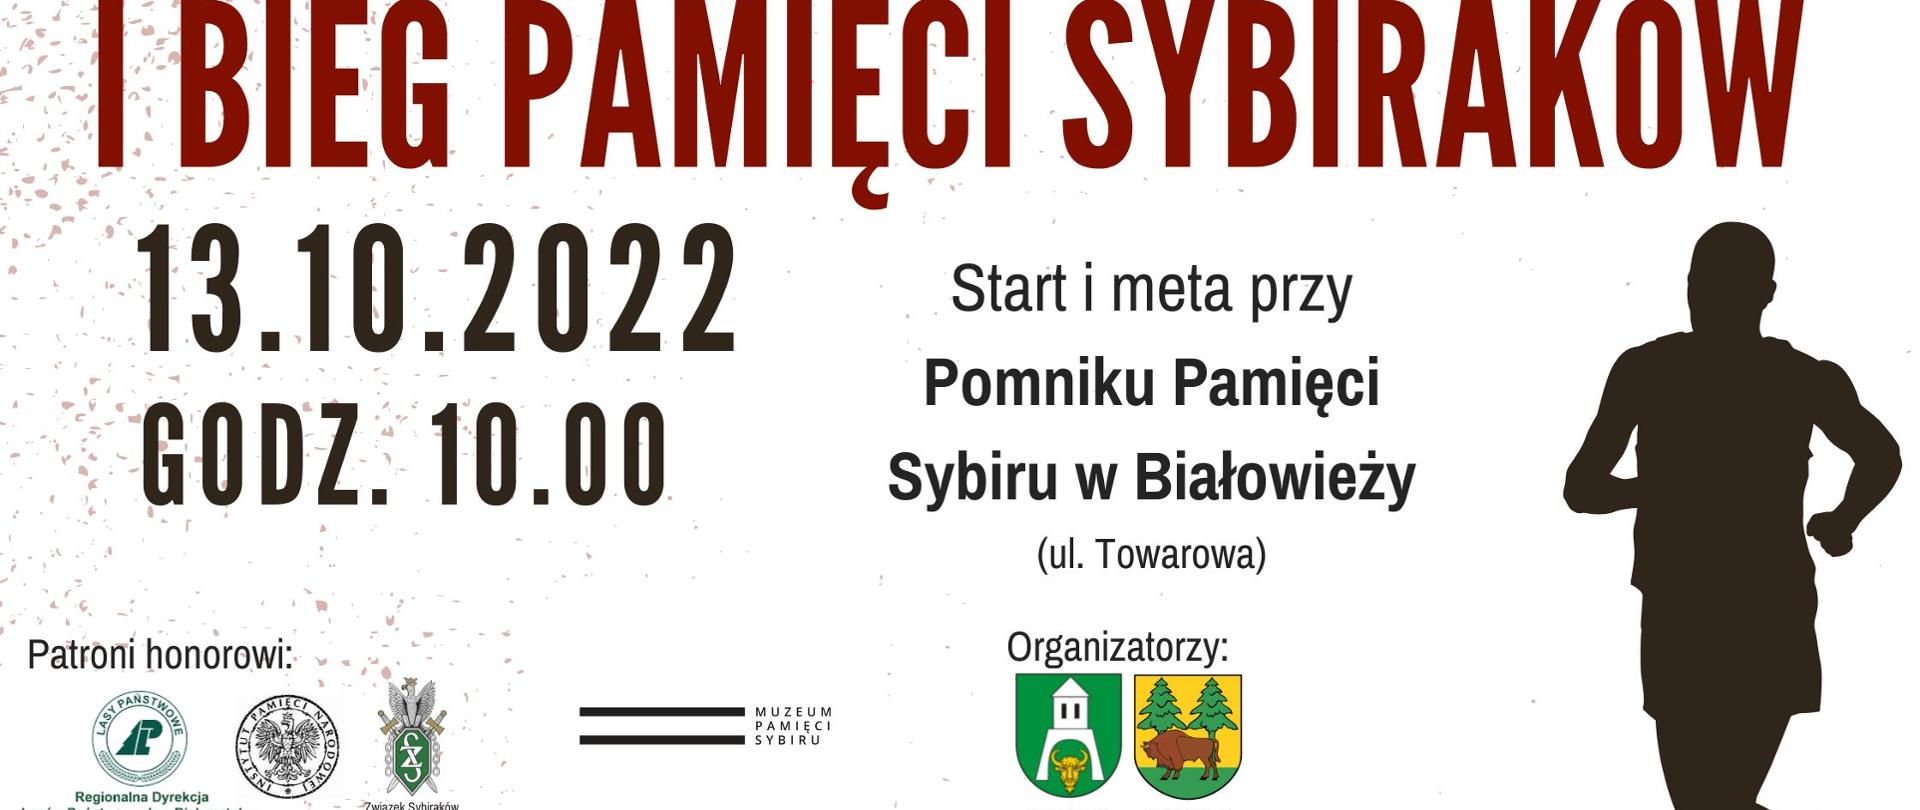 Plakat promujący wydarzenie: I Bieg Pamięci Sybiraków - na plakacie data i miejsce wydarzenia oraz logo Organizatorów, patronów, partnerów i patronów medialnych